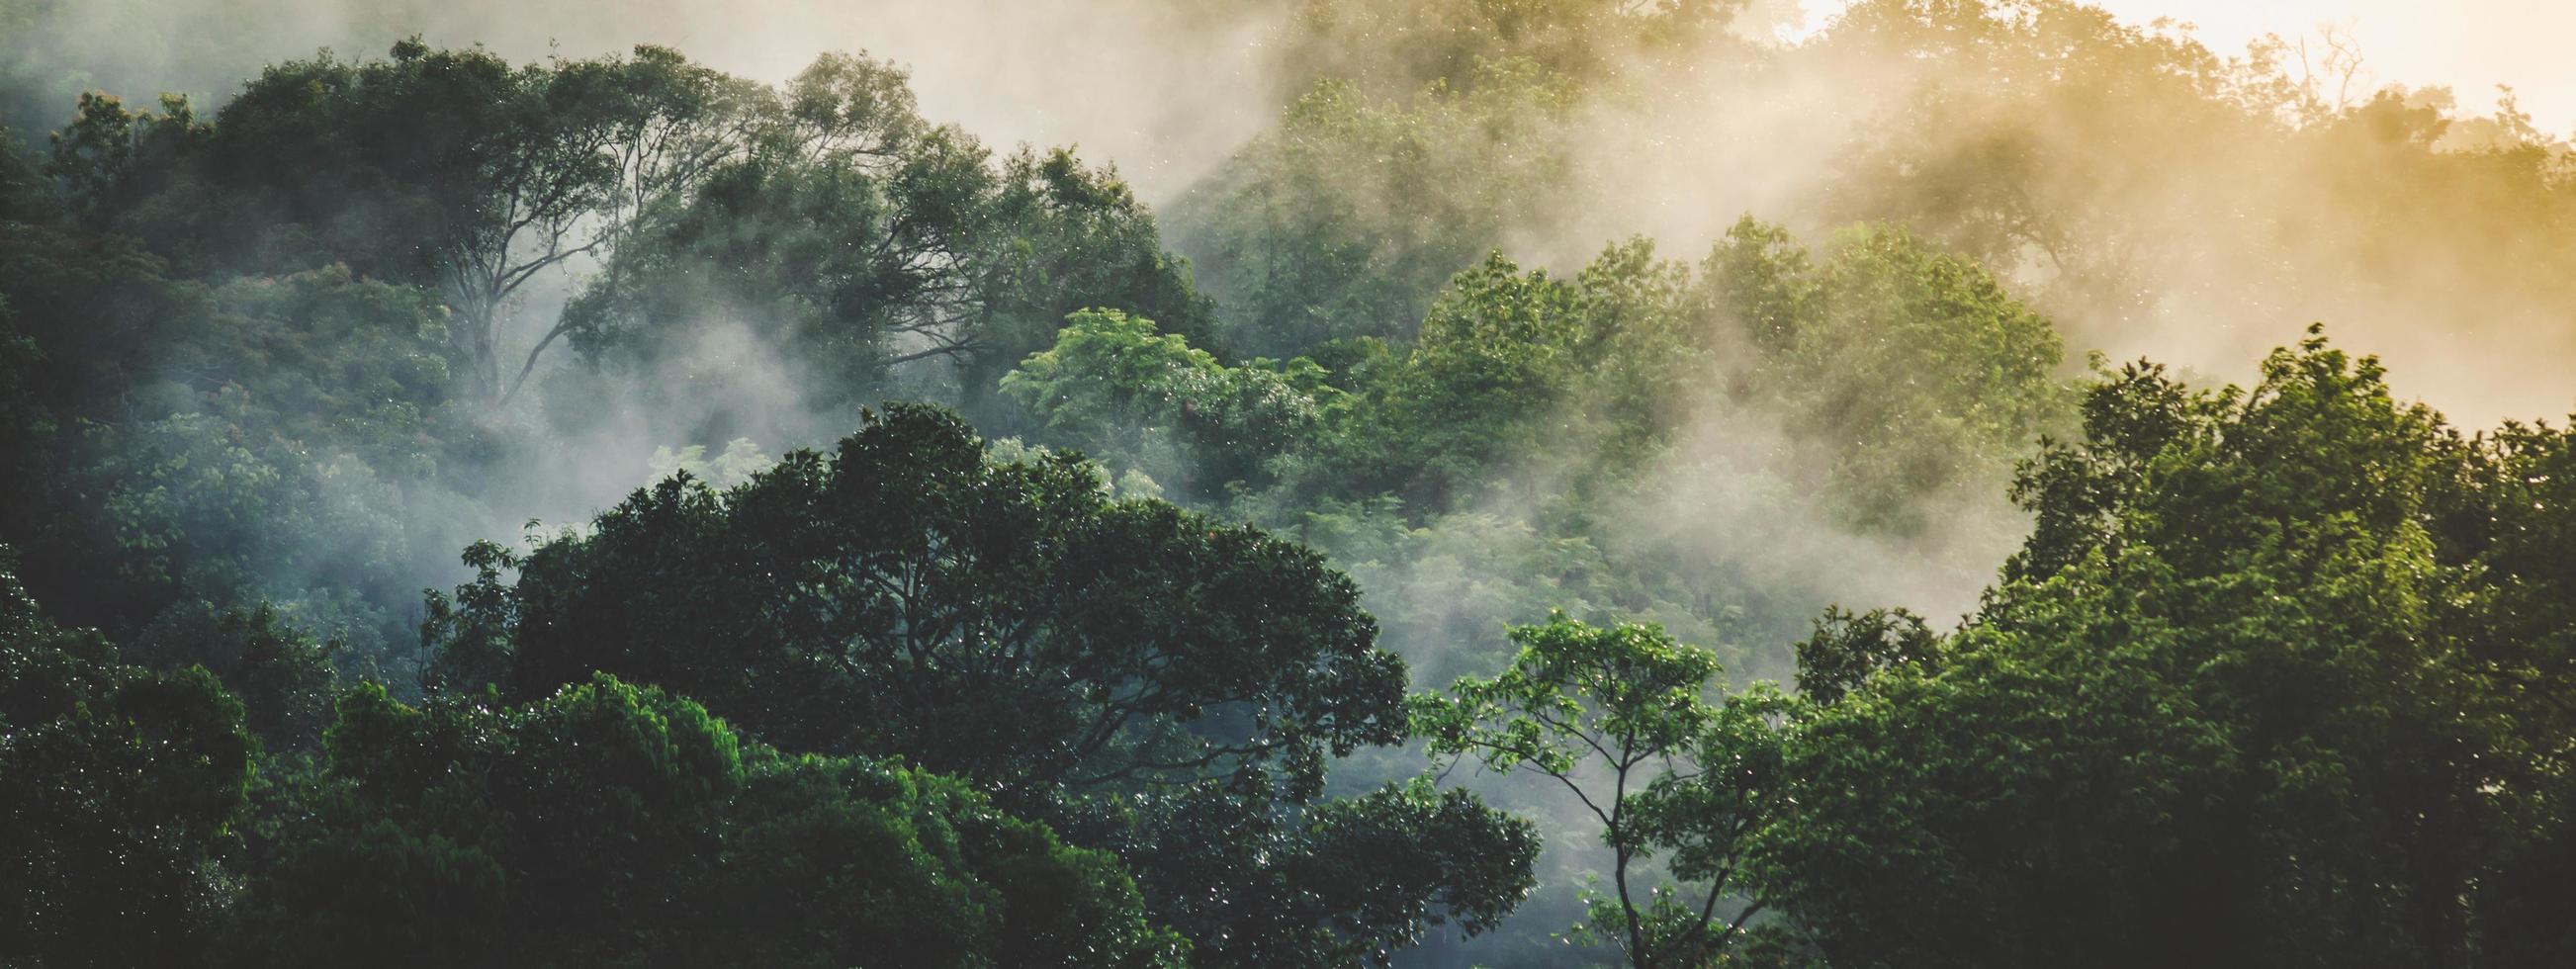 fond de bannière panoramique de scène de paysage de forêt tropicale à utiliser dans le concept d'écologie environnementale et d'énergie durable ou jour de la terre, paysage de bois sauvage utilisé pour le fond d'écran du spa et du tourisme photo